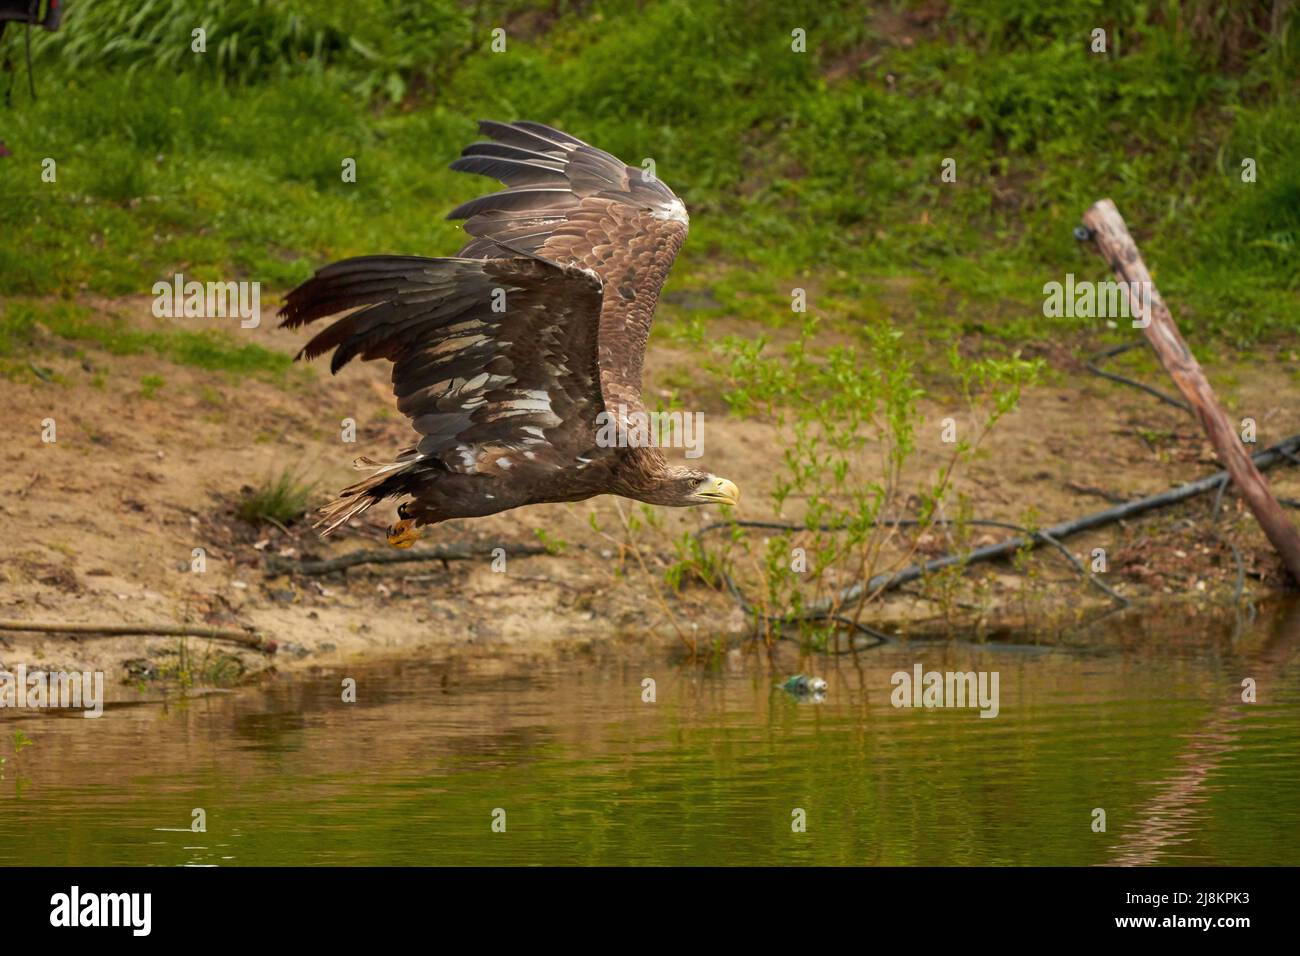 Un aigle à tête blanche de chasse vole au-dessus de la surface de l'eau d'un lac vert à la recherche de poissons. Arbres en arrière-plan, réflexion, détail Banque D'Images